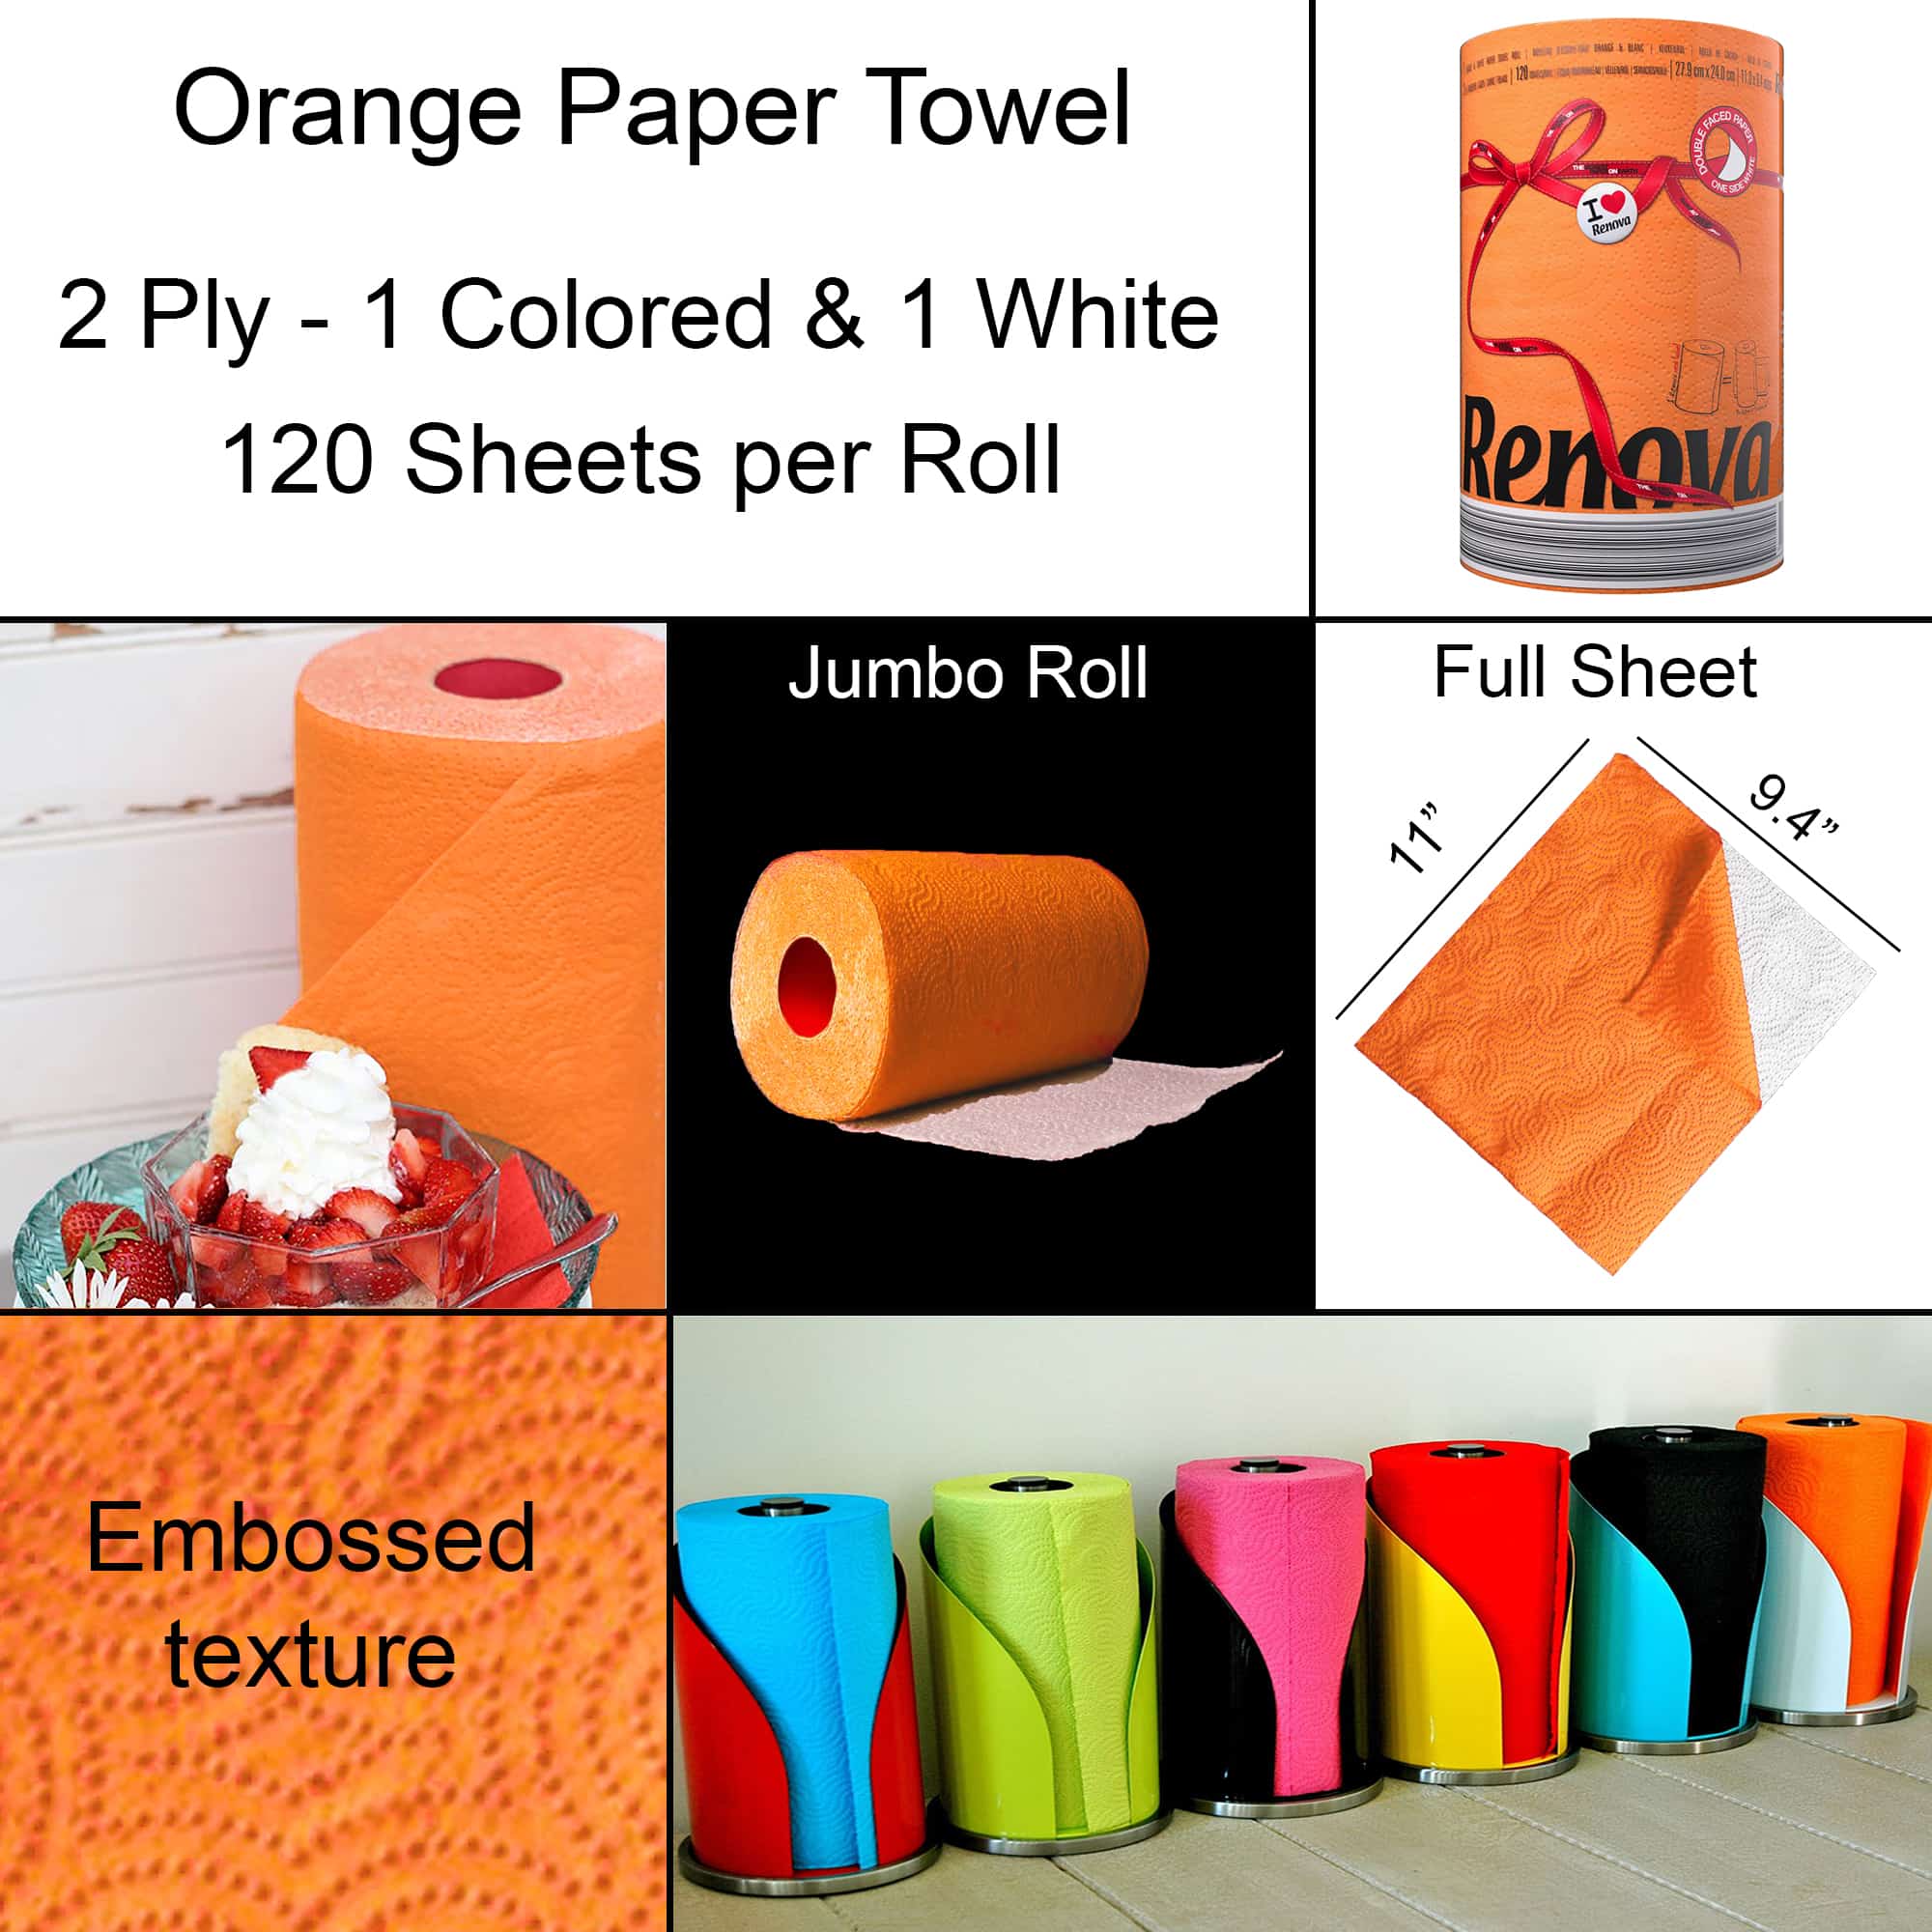 Orange Paper Towel Pack, Renova